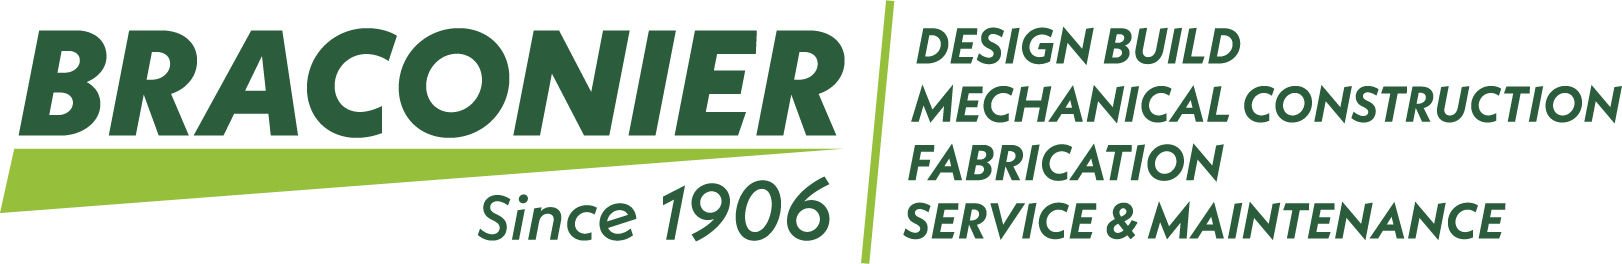 Braconier-New-Logo-2020-Final